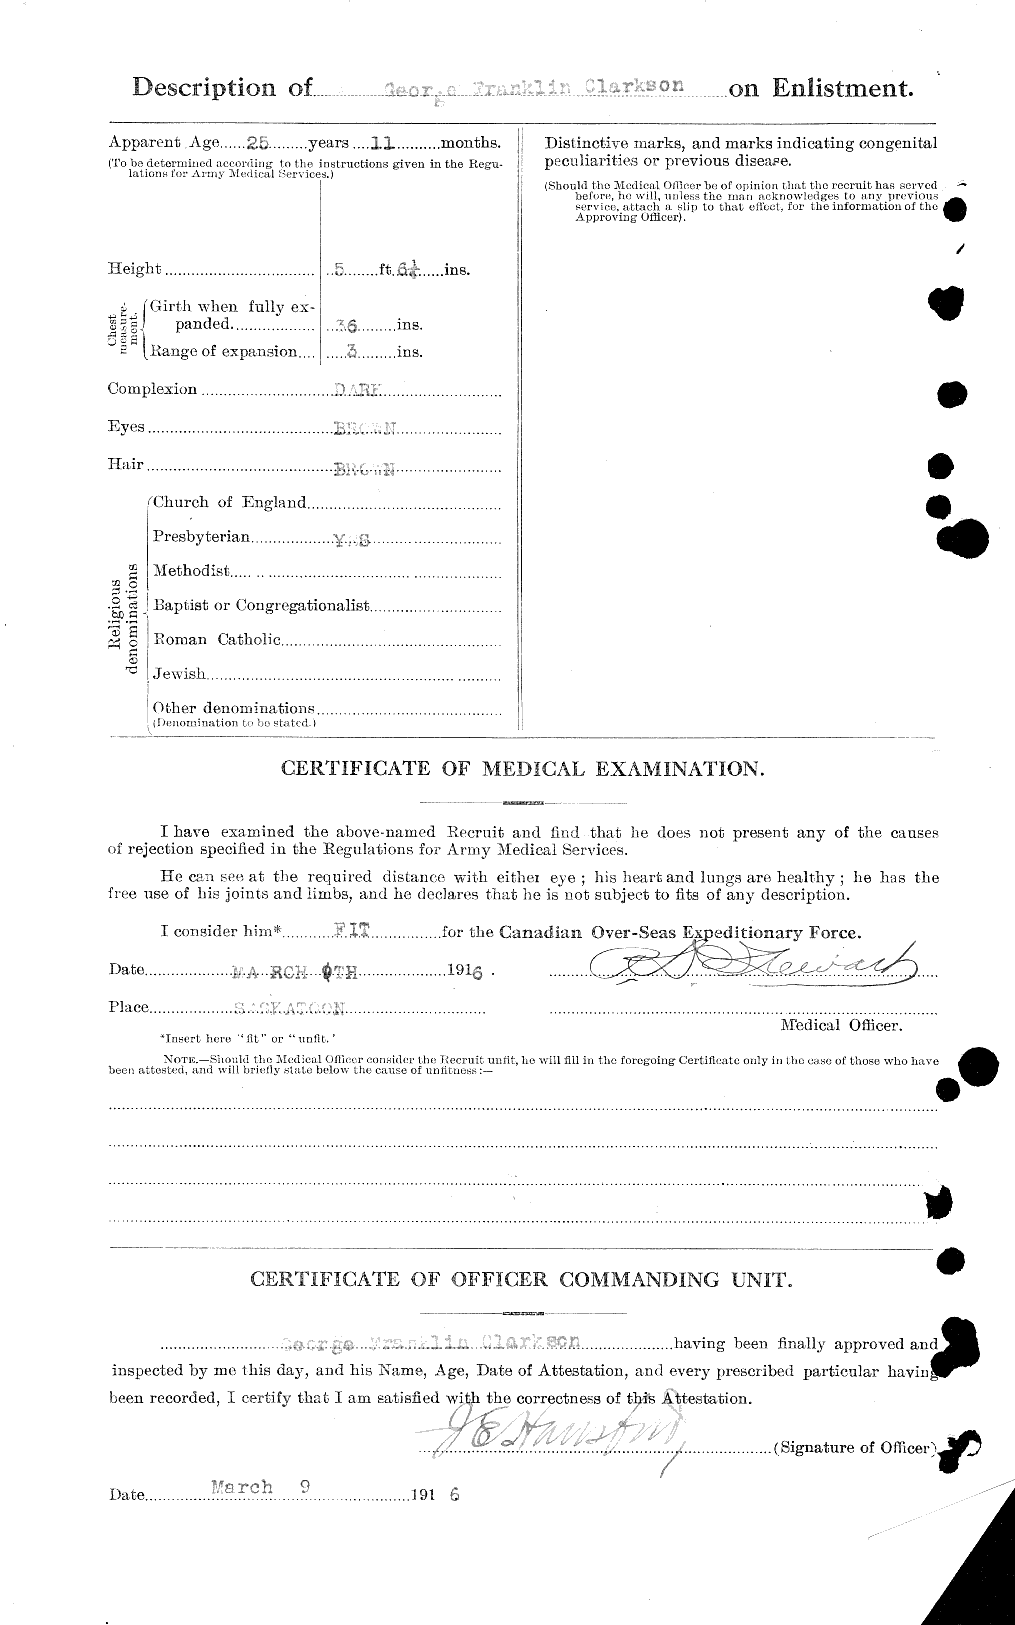 Dossiers du Personnel de la Première Guerre mondiale - CEC 021430b